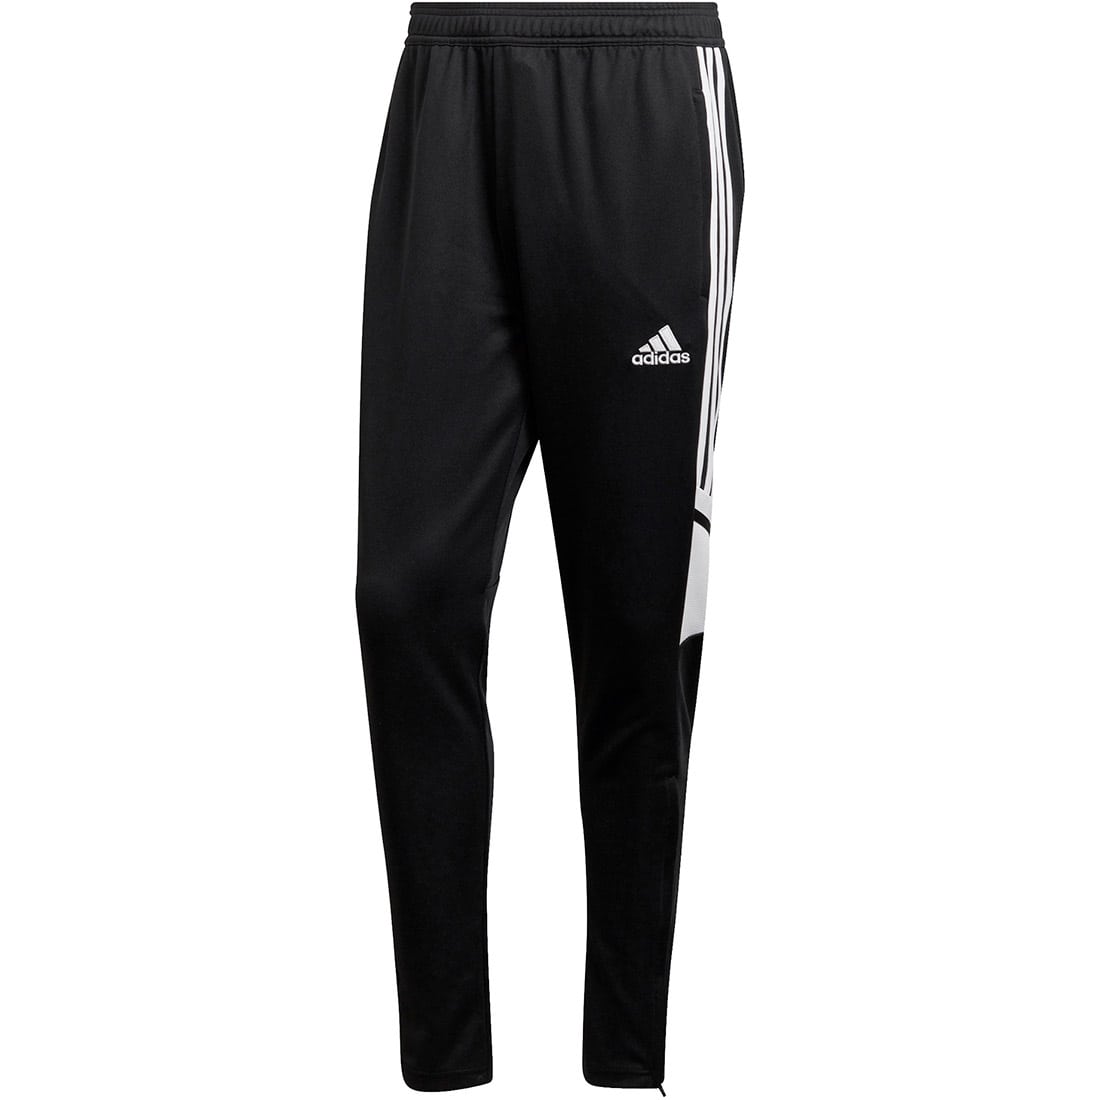 Adidas Herren Trainingshose Condivo 22 schwarz-weiß